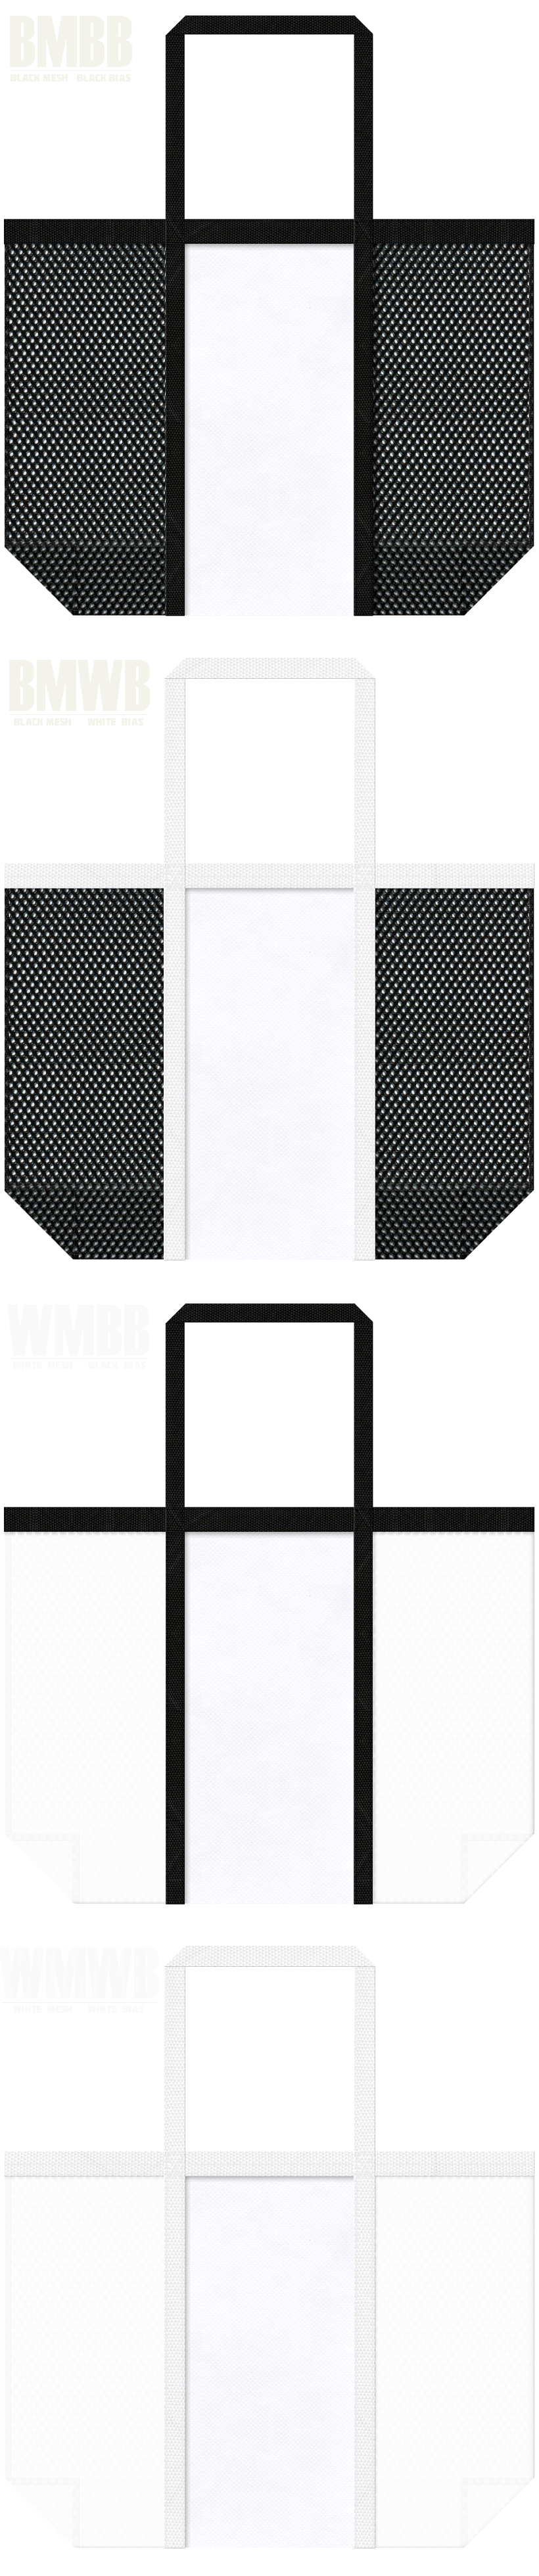 台形型メッシュバッグのカラーシミュレーション：黒色・白色メッシュと白色不織布の組み合わせ